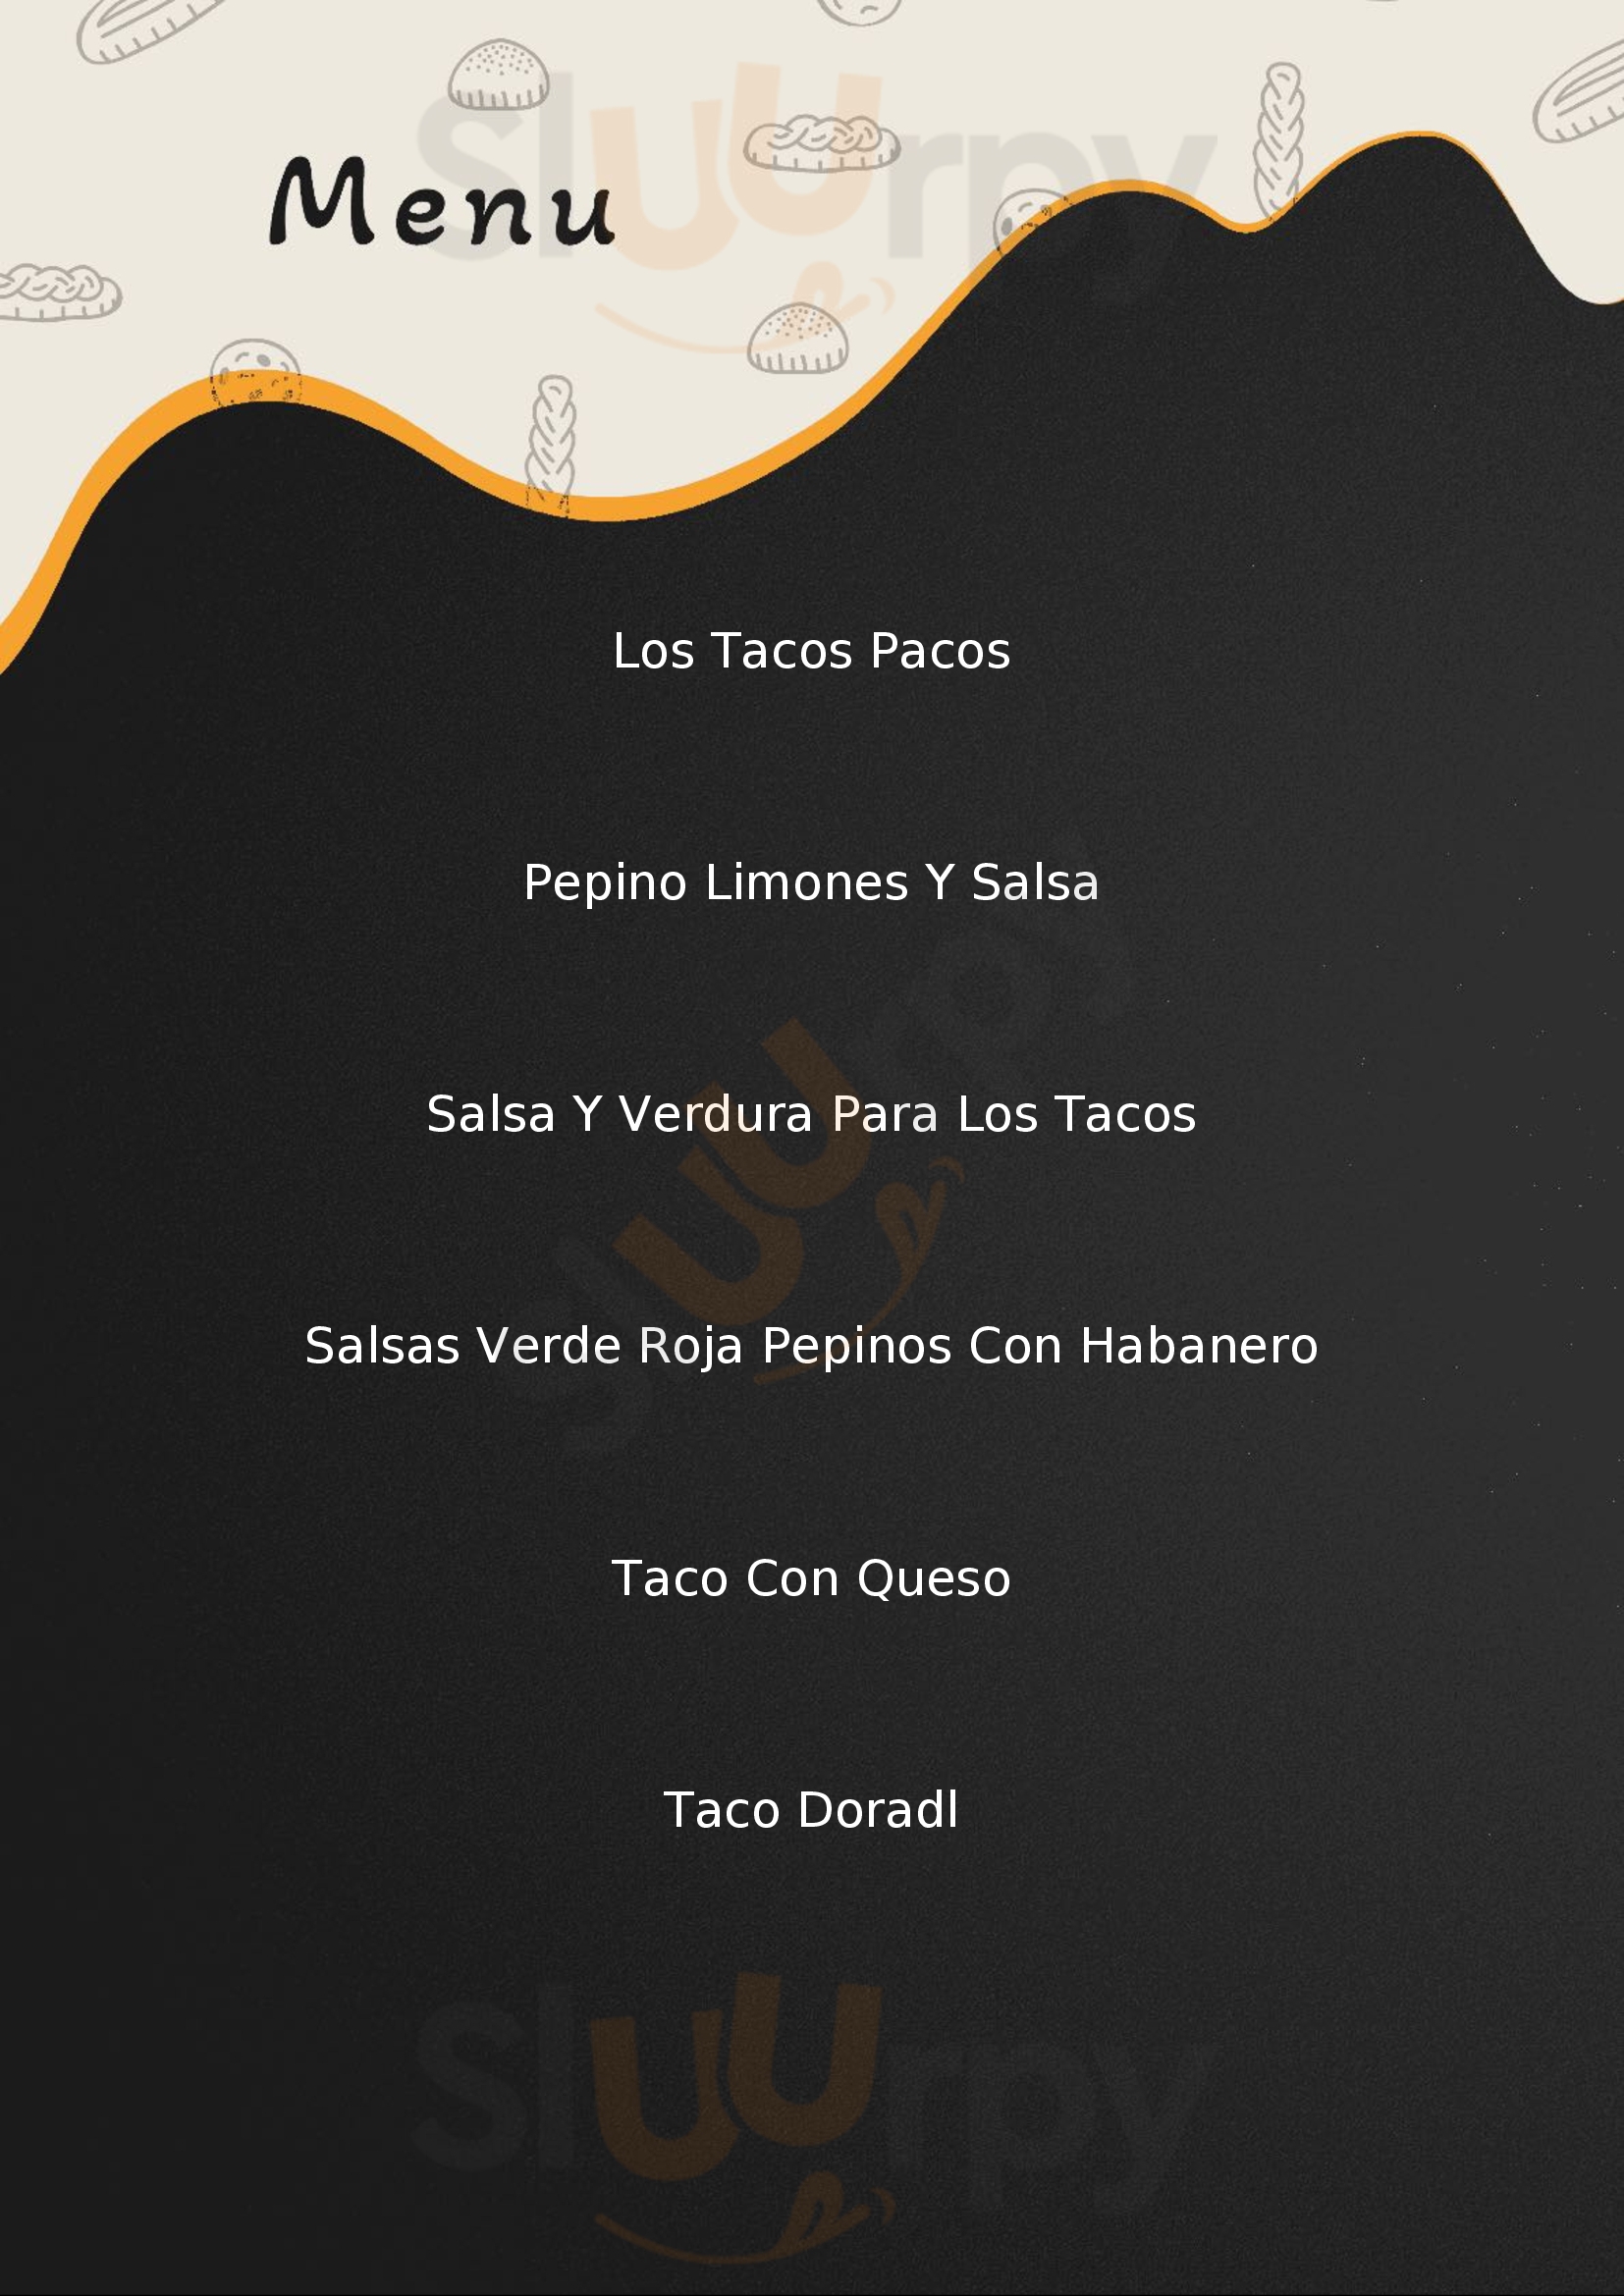 Tacos Paco Guadalajara Menu - 1